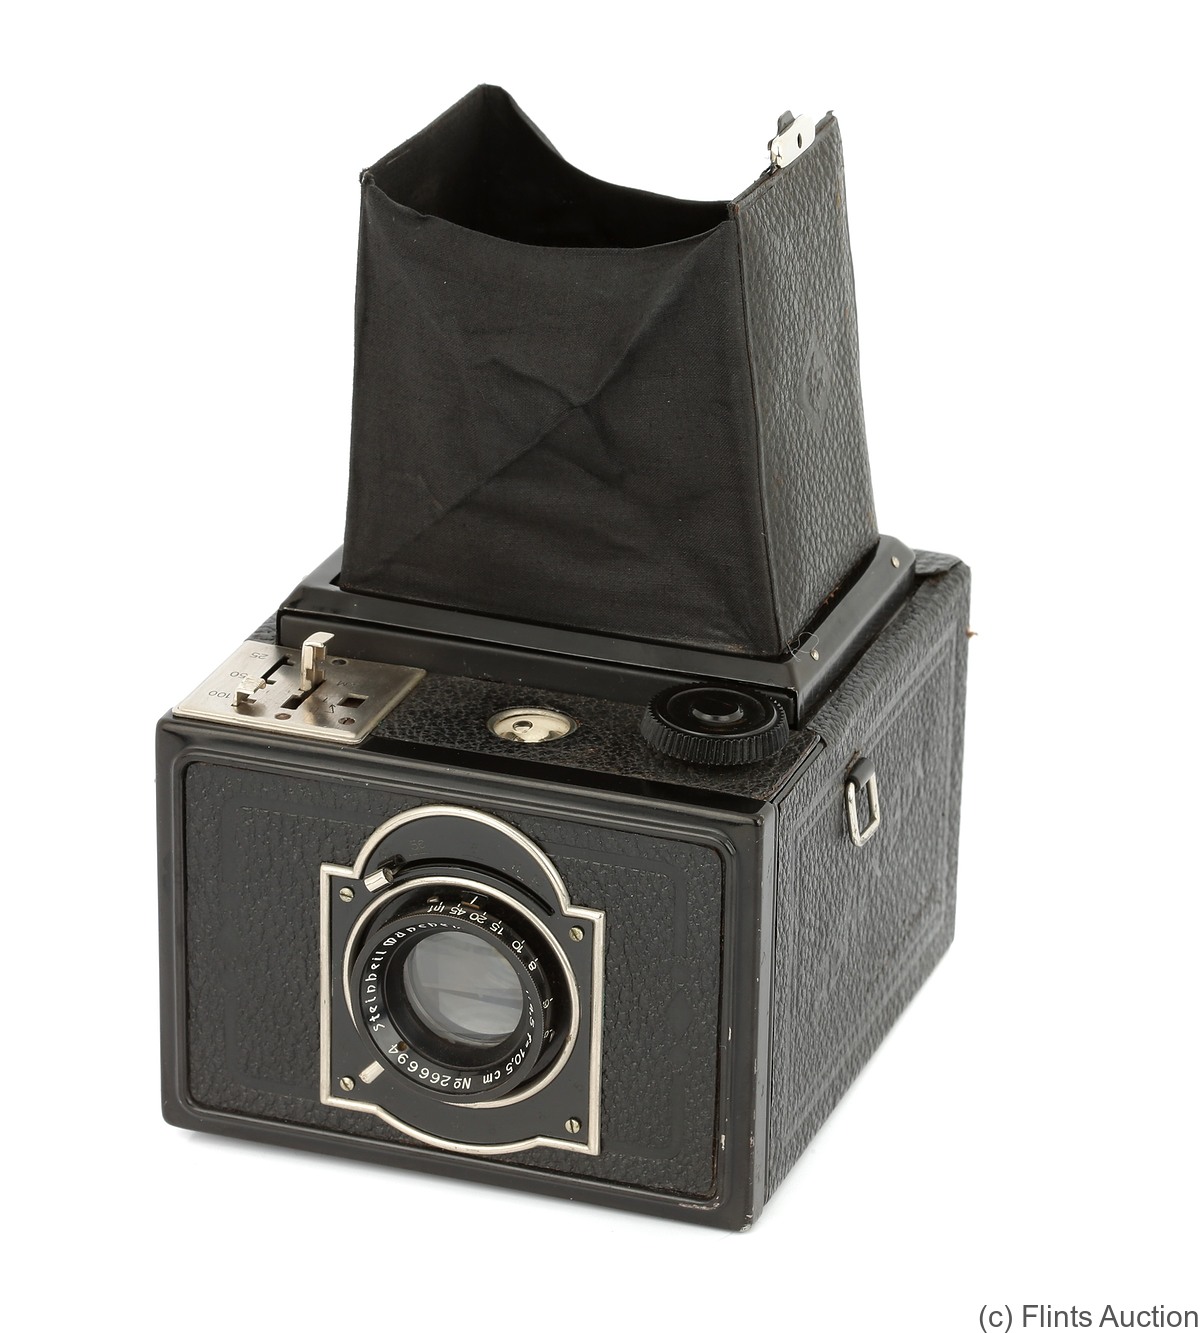 KW (KameraWerkstatten): Reflex Box camera